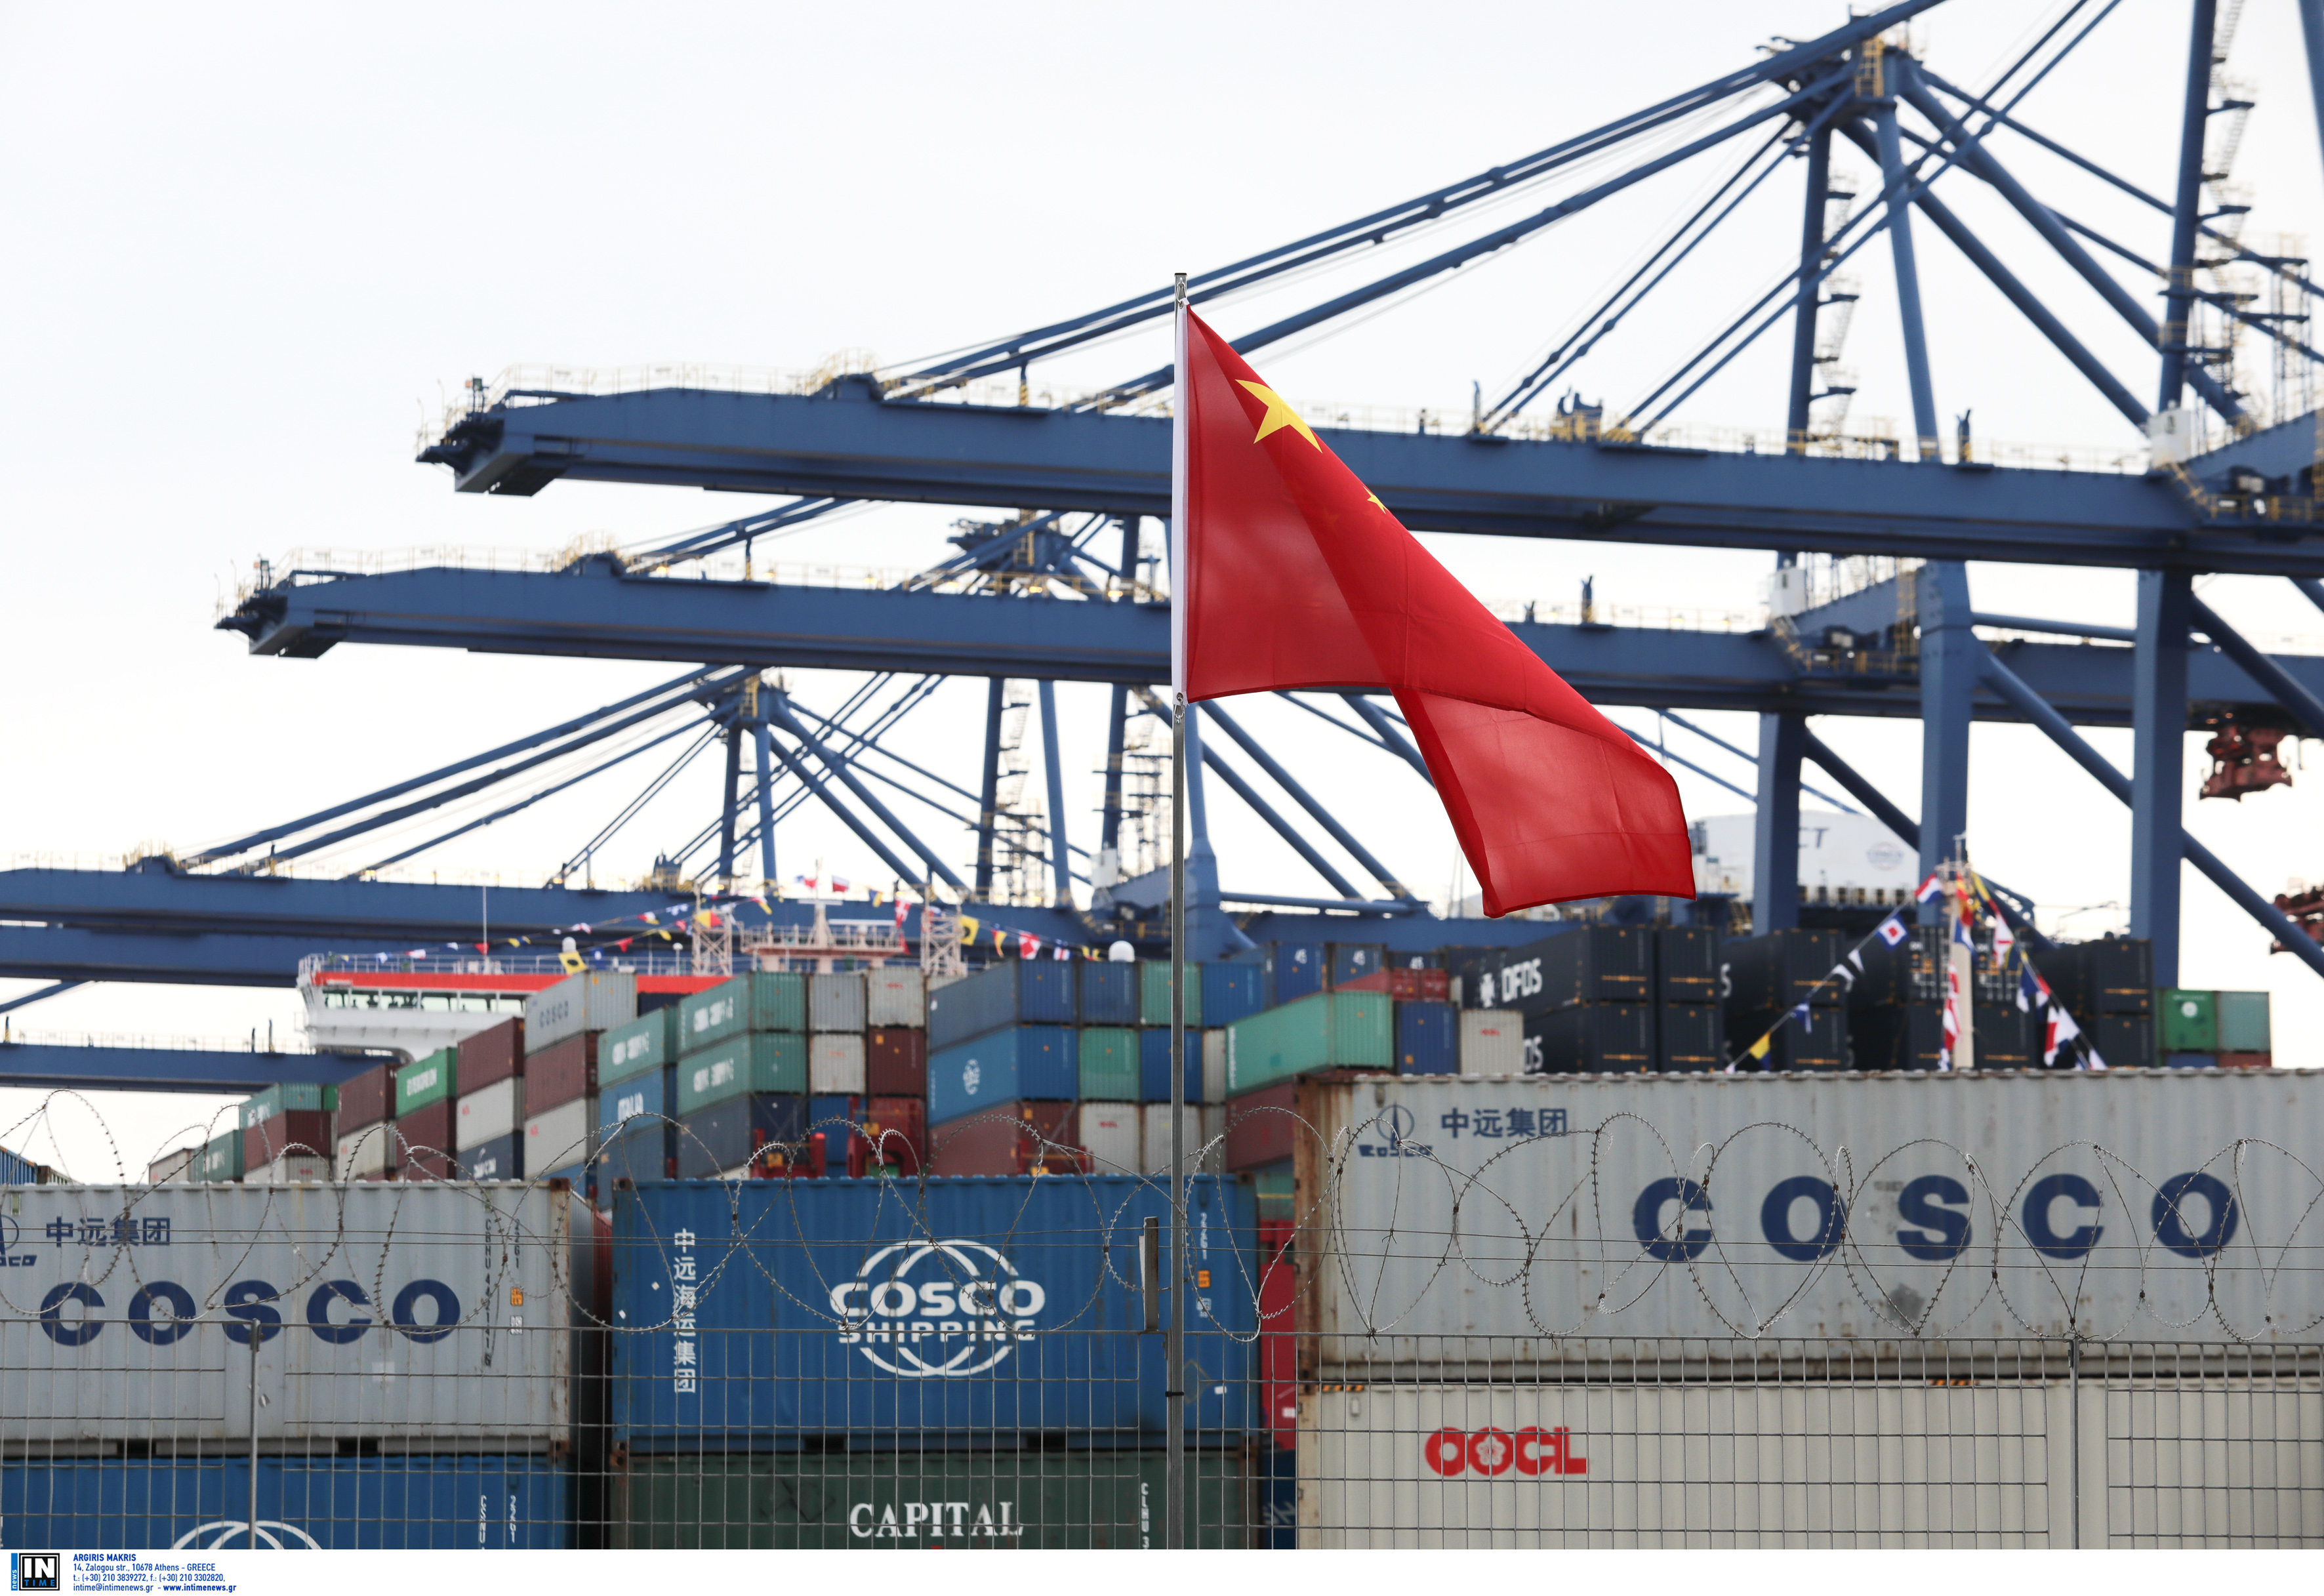 Αμβούργο: Λιγότερο λιμάνι θα αποκτήσει η Cosco σε σχέση με την αρχική συμφωνία